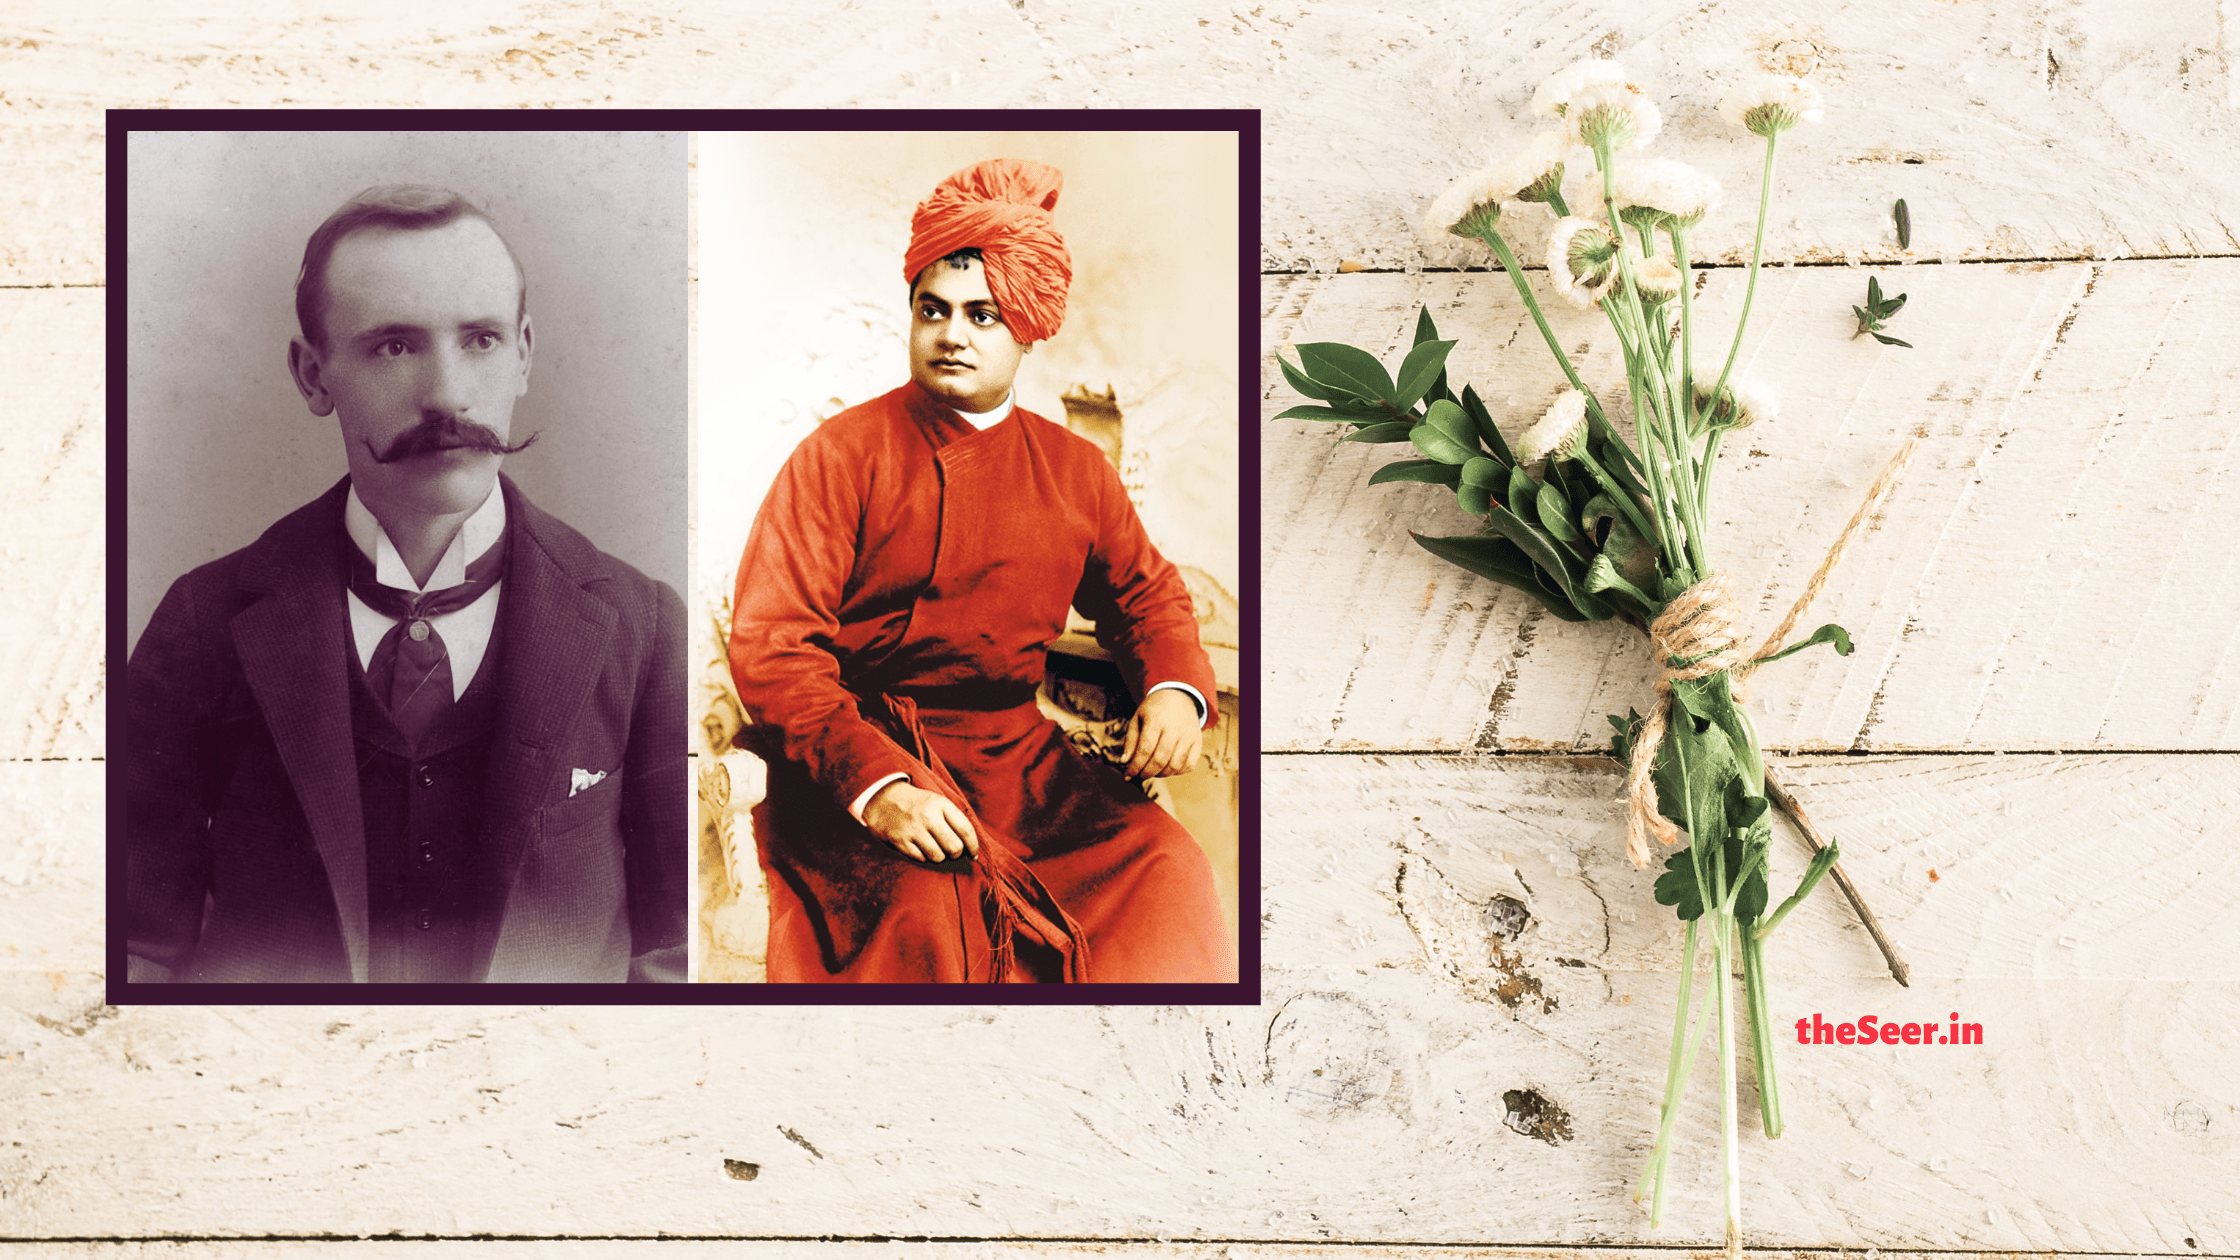 Photos of JJ Goodwin and Swami Vivekananda